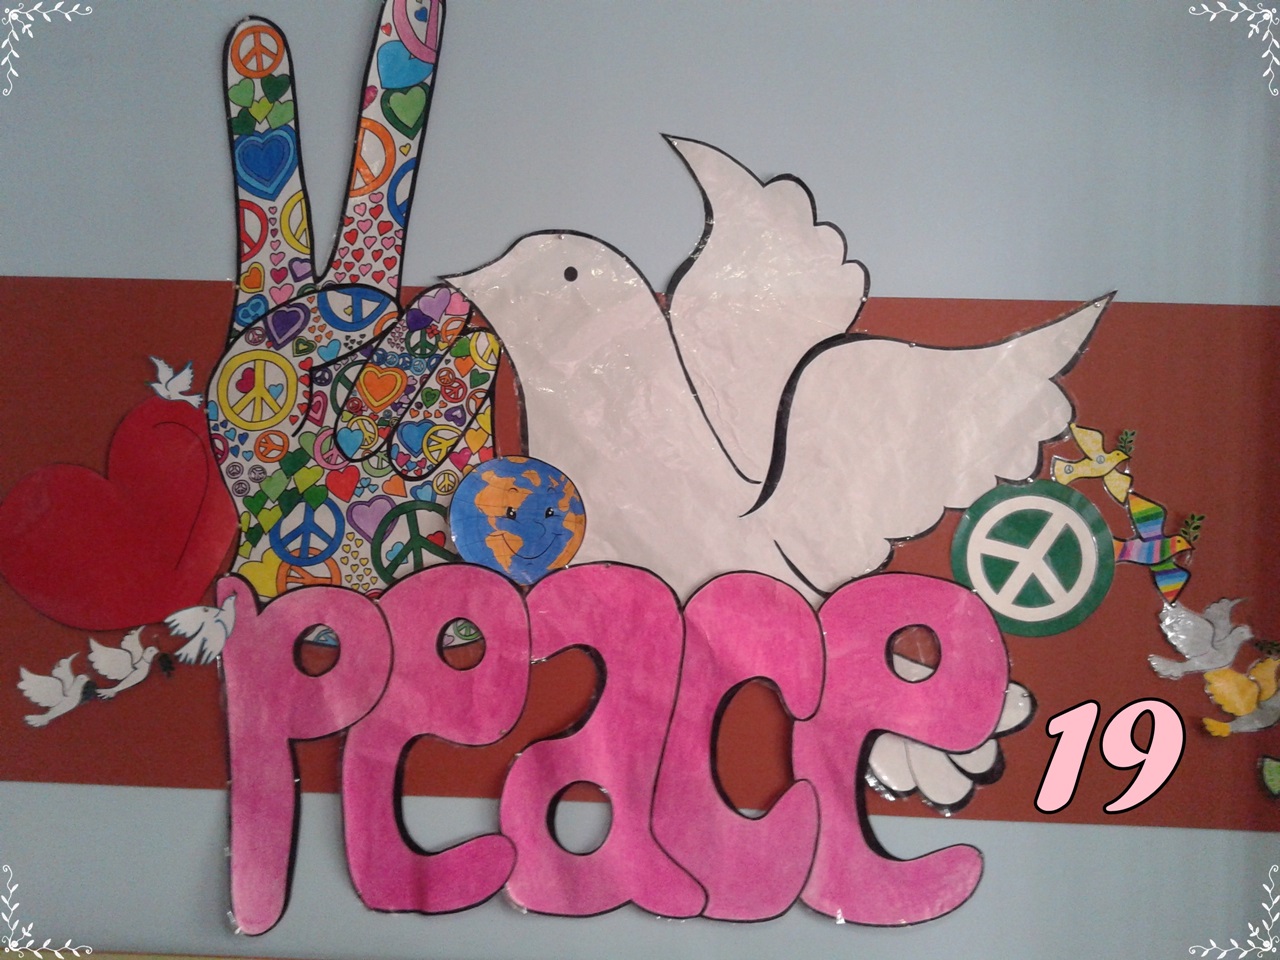 Paz 19